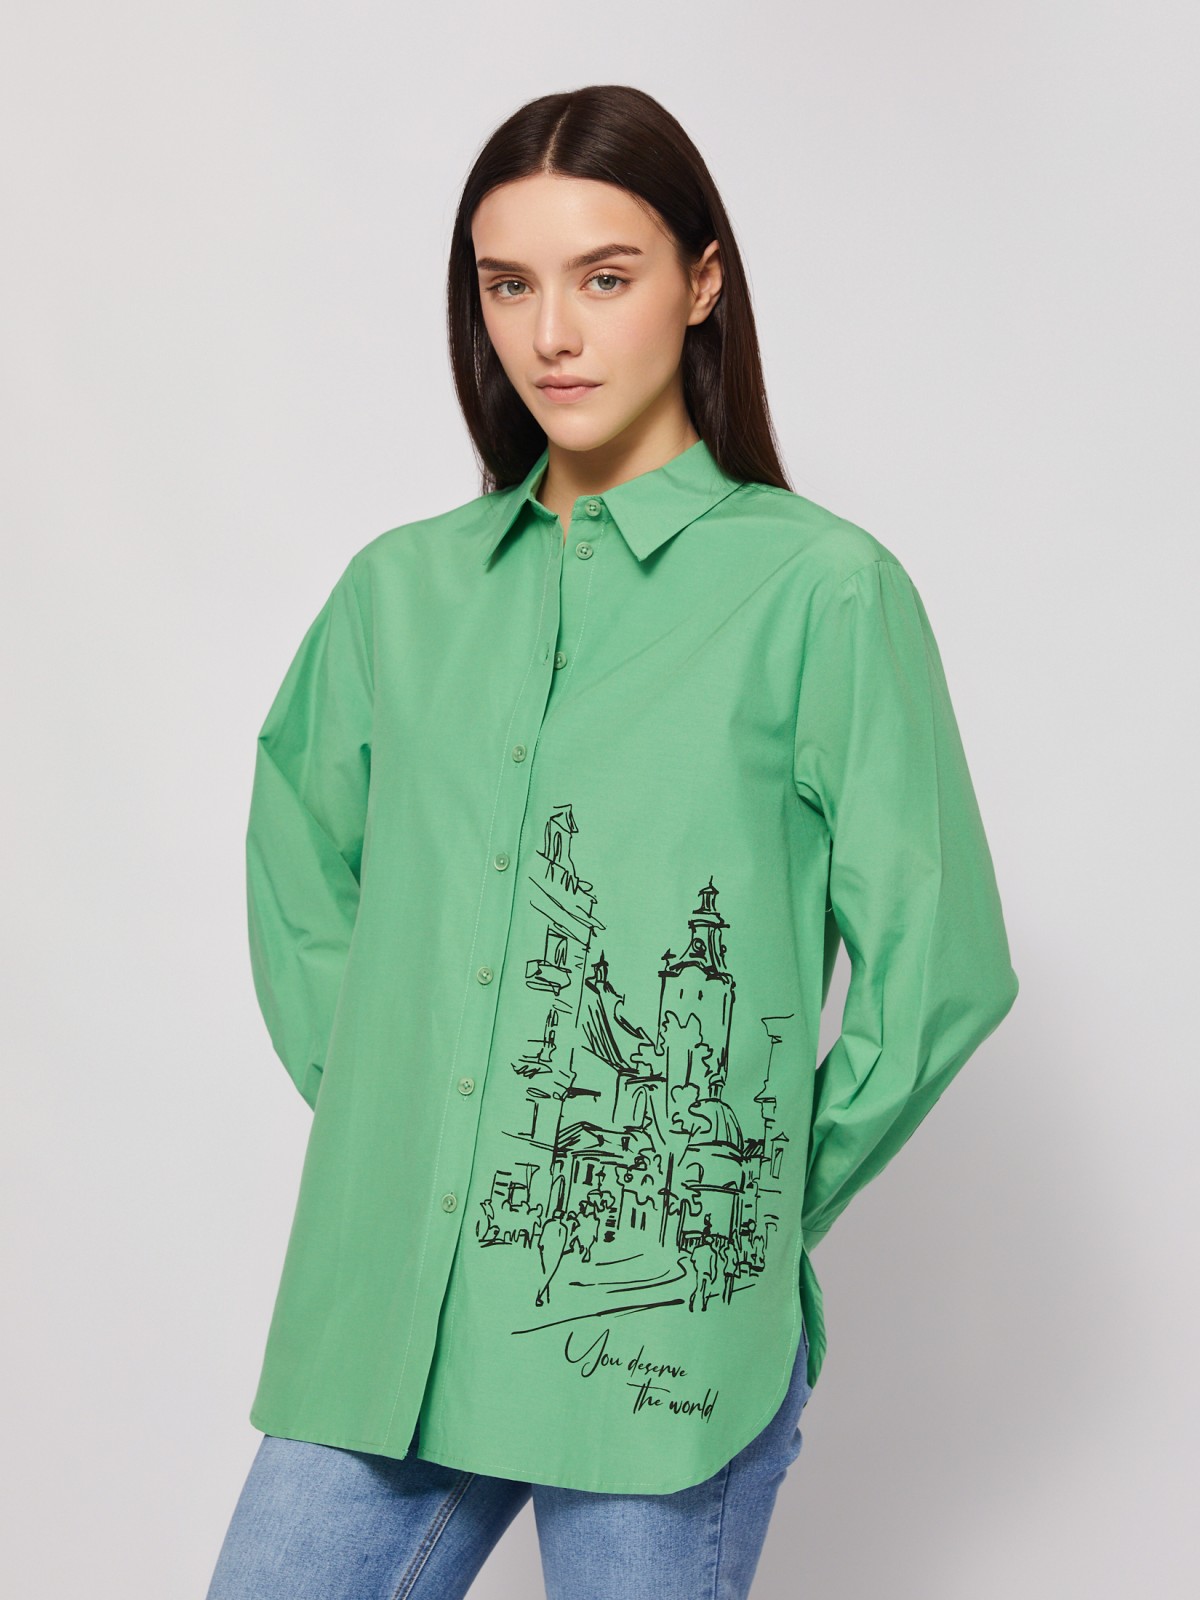 Рубашка прямого фасона с принтом zolla 024221159313, цвет зеленый, размер M